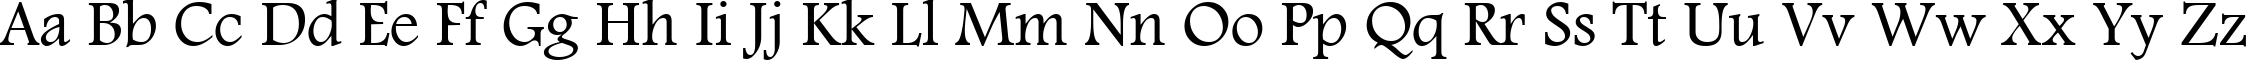 Пример написания английского алфавита шрифтом Andalus